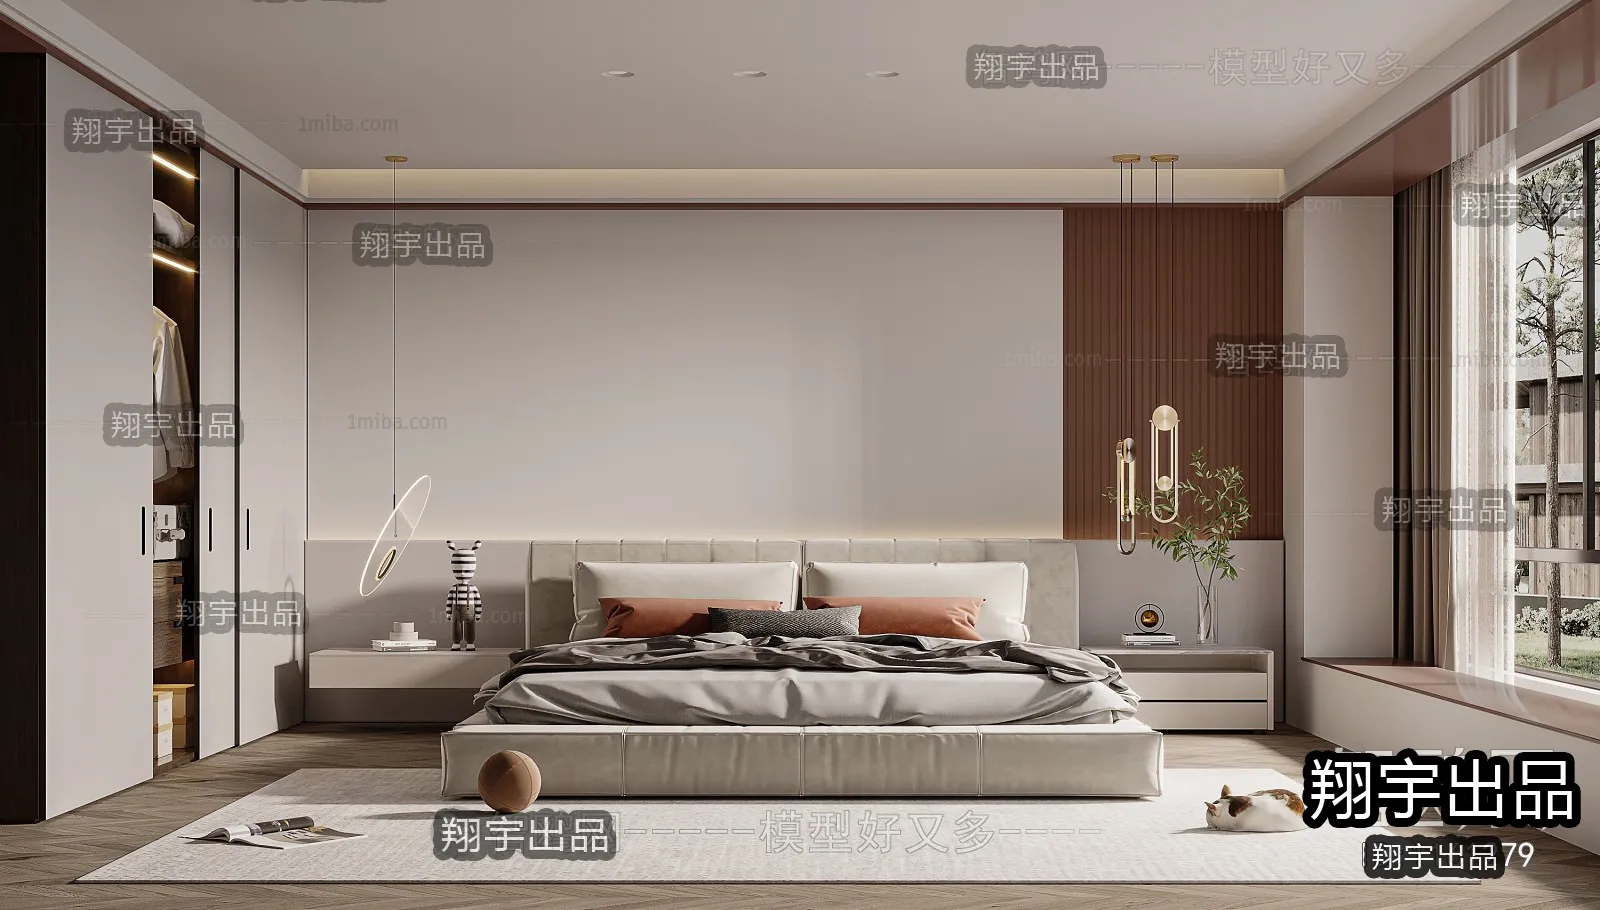 Bedroom – Modern Interior Design – 3D Models – 040